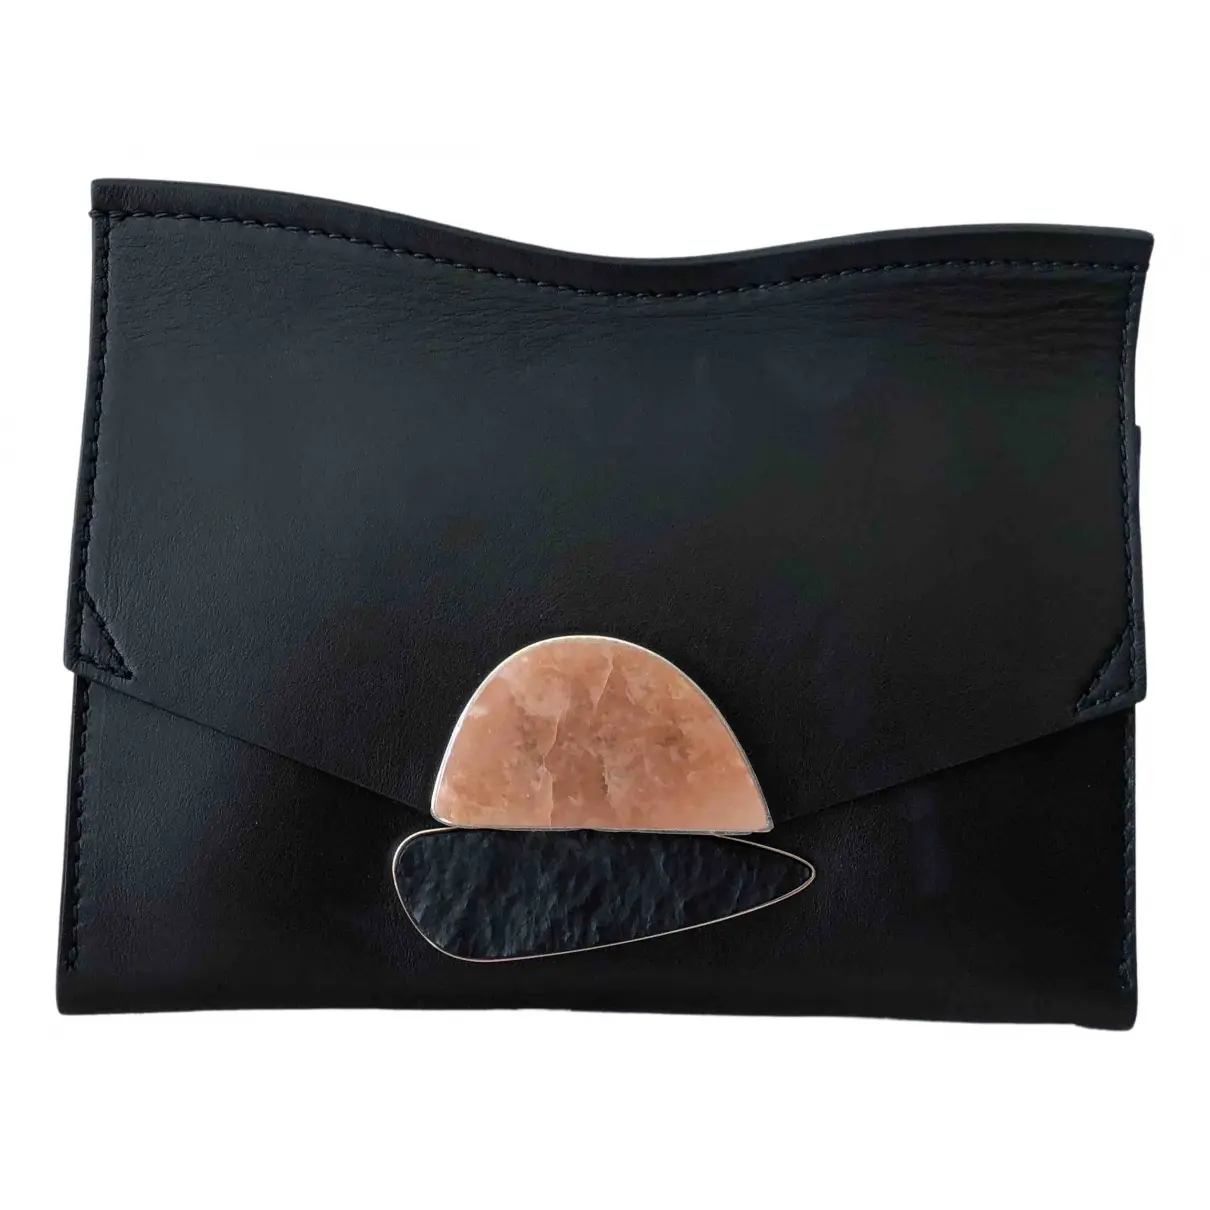 Leather clutch bag Proenza Schouler